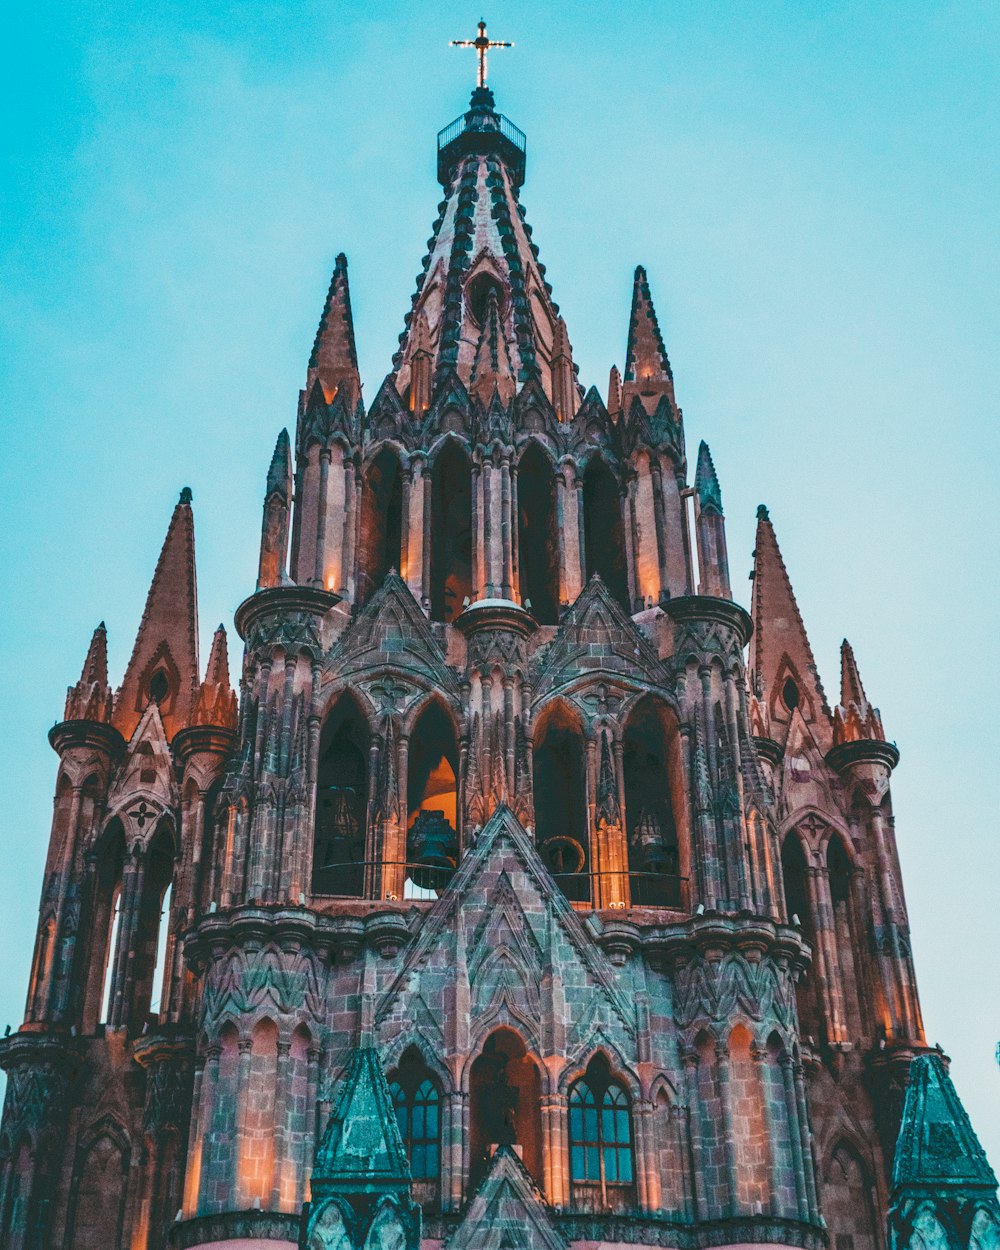 Sagrada Familia building